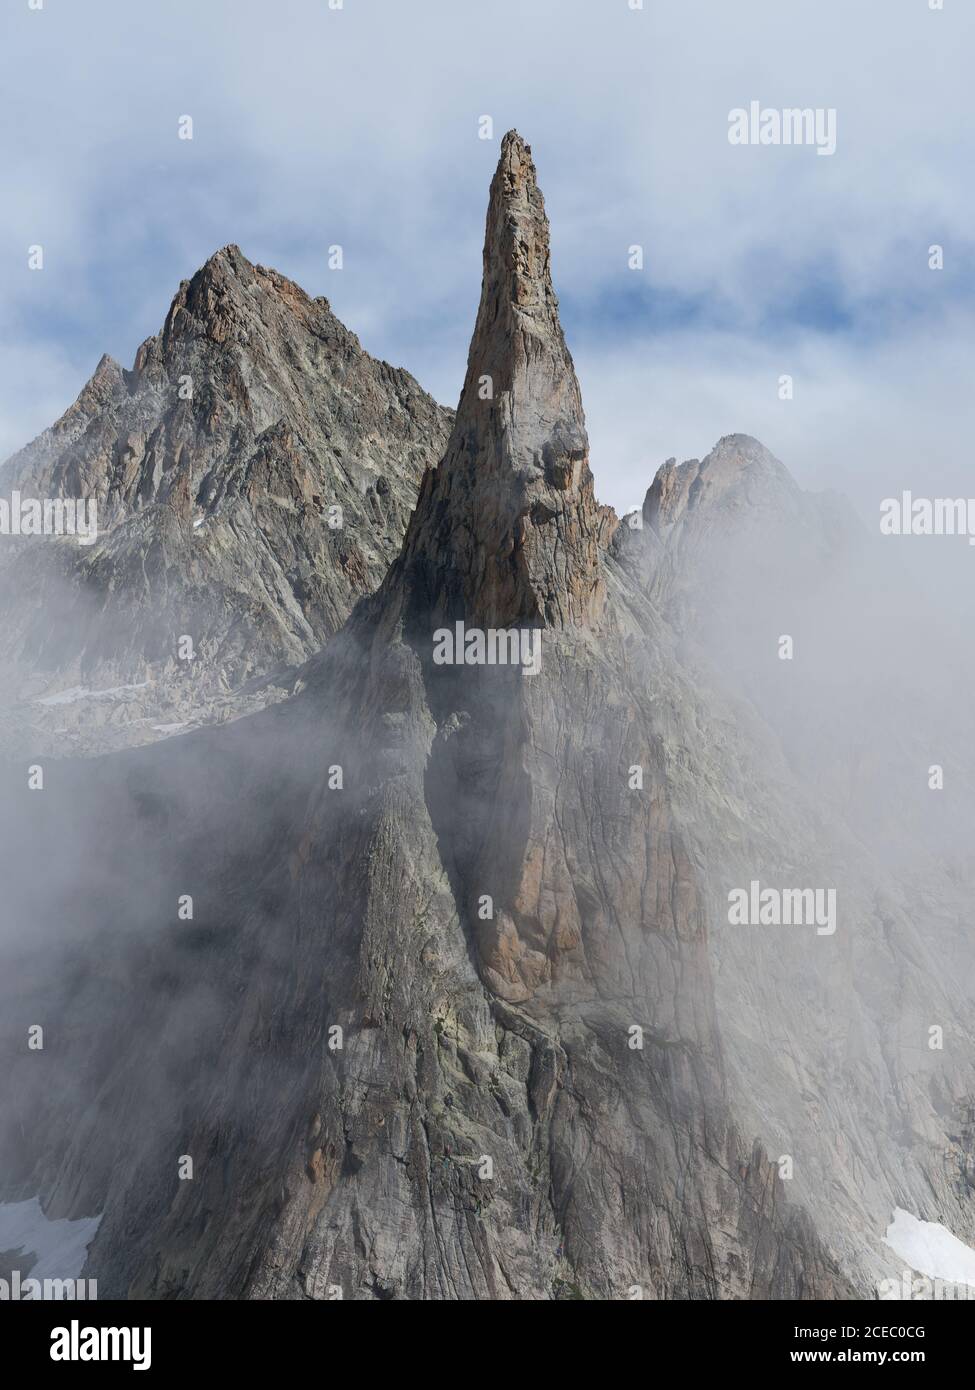 LUFTAUFNAHME. Hoch aufragender Granitgipfel im Nebel. Aiguille de Dibona, Saint-Christophe-en-Oisans, Isère, Auvergne-Rhône-Alpes, Frankreich. Stockfoto